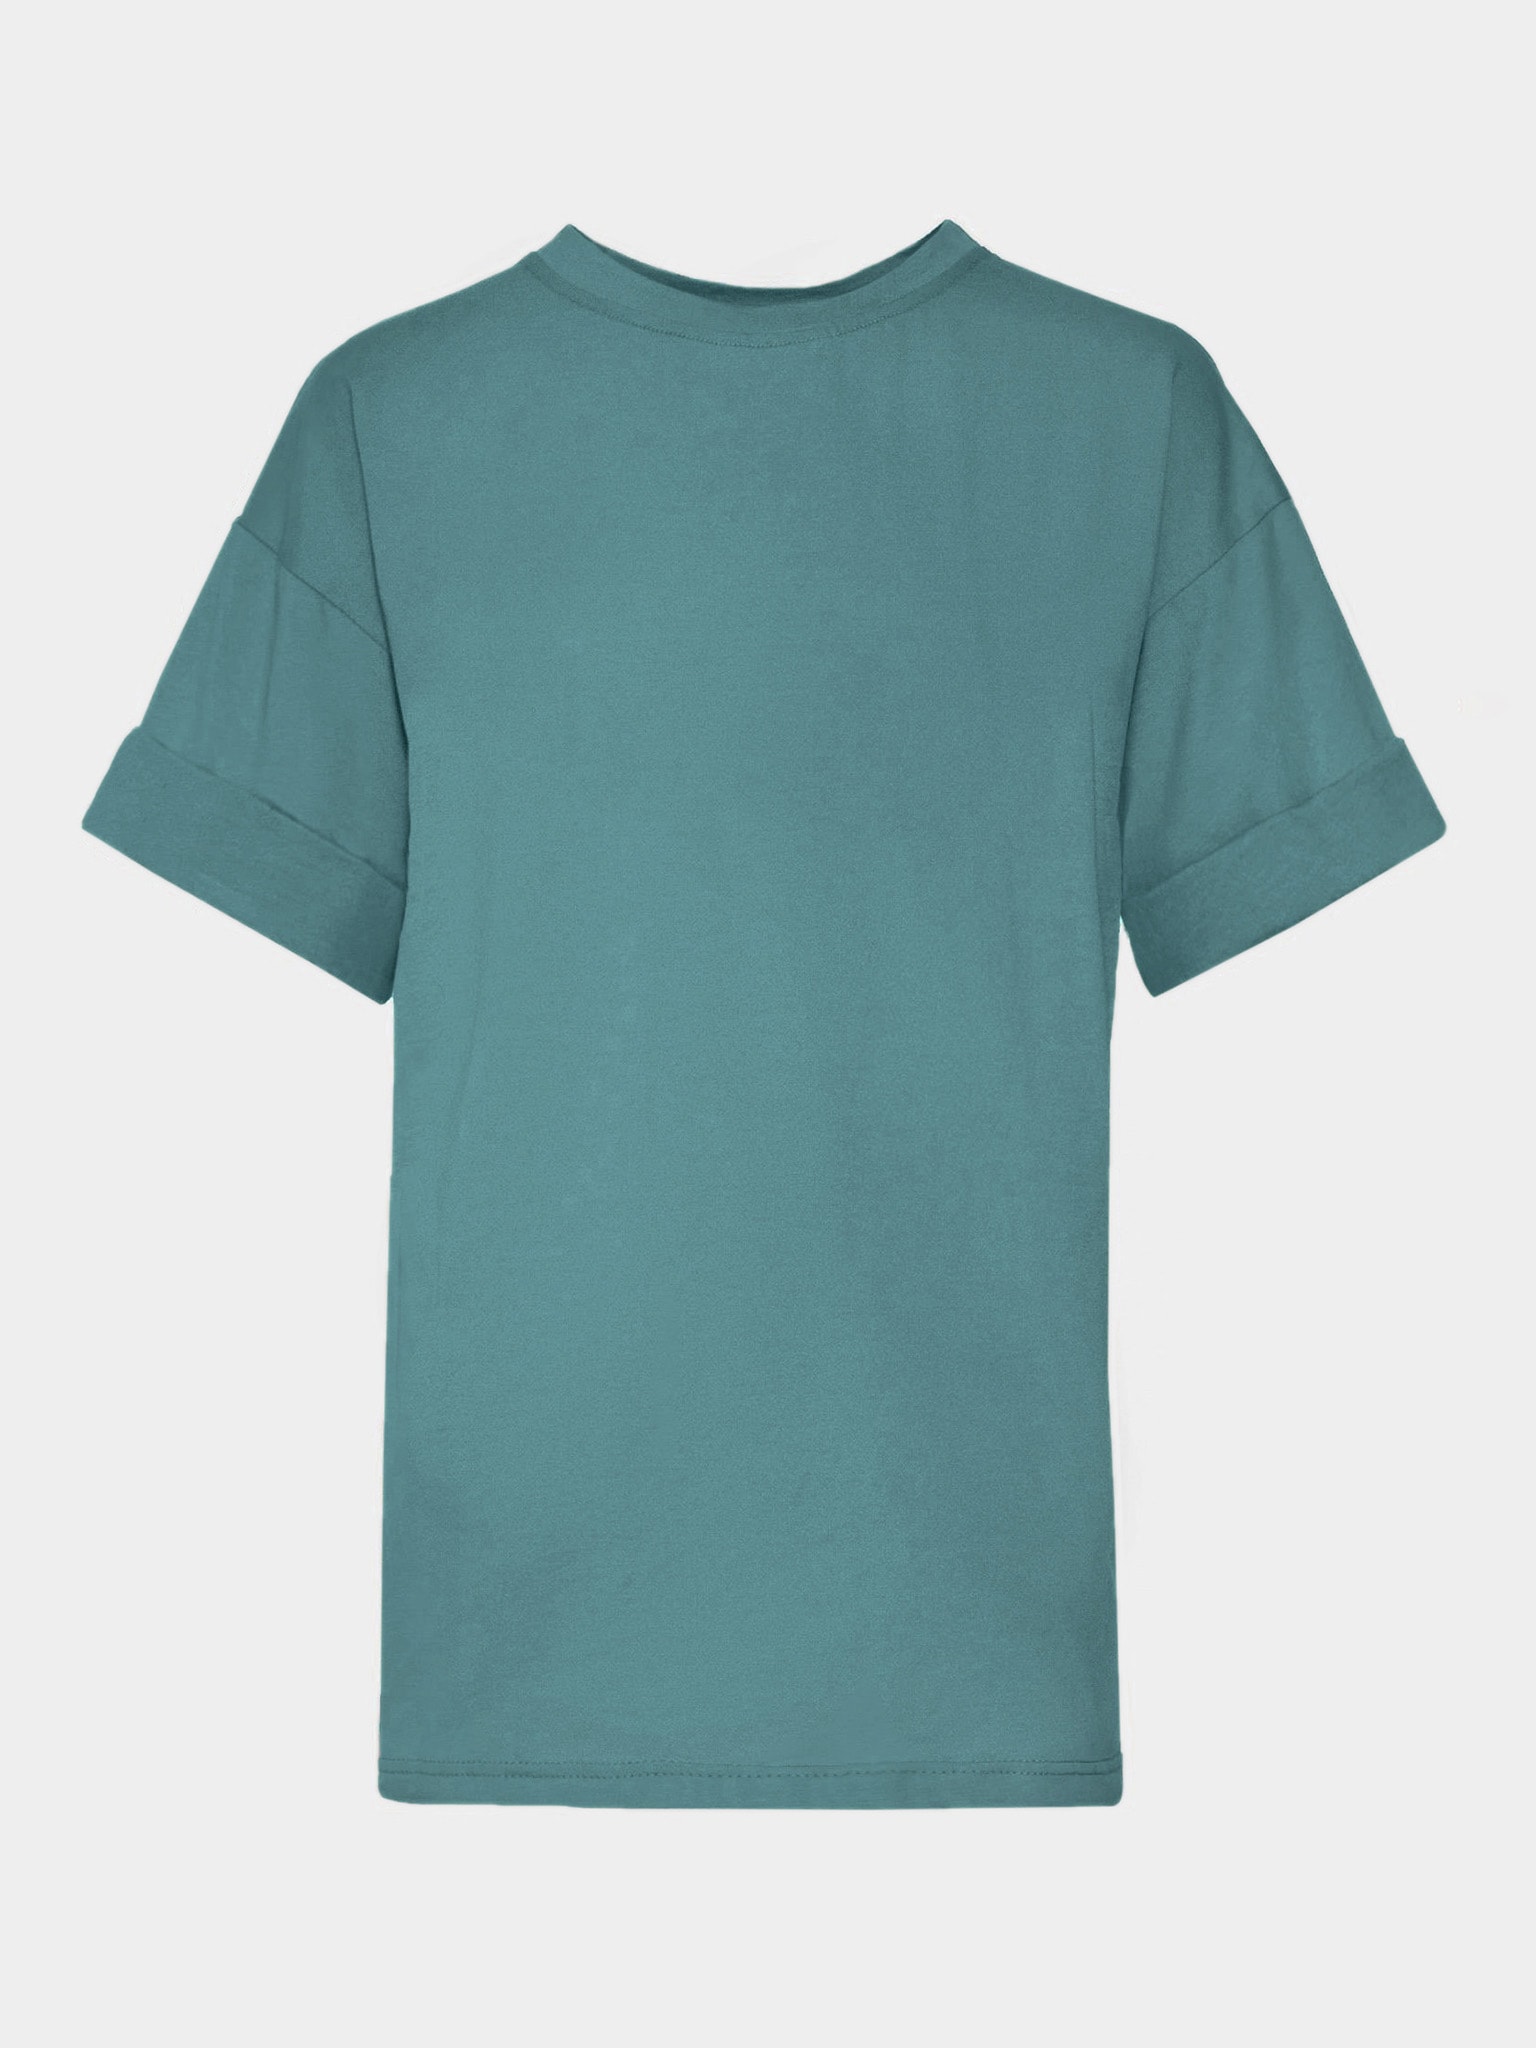 Cotton-jersey t-shirt